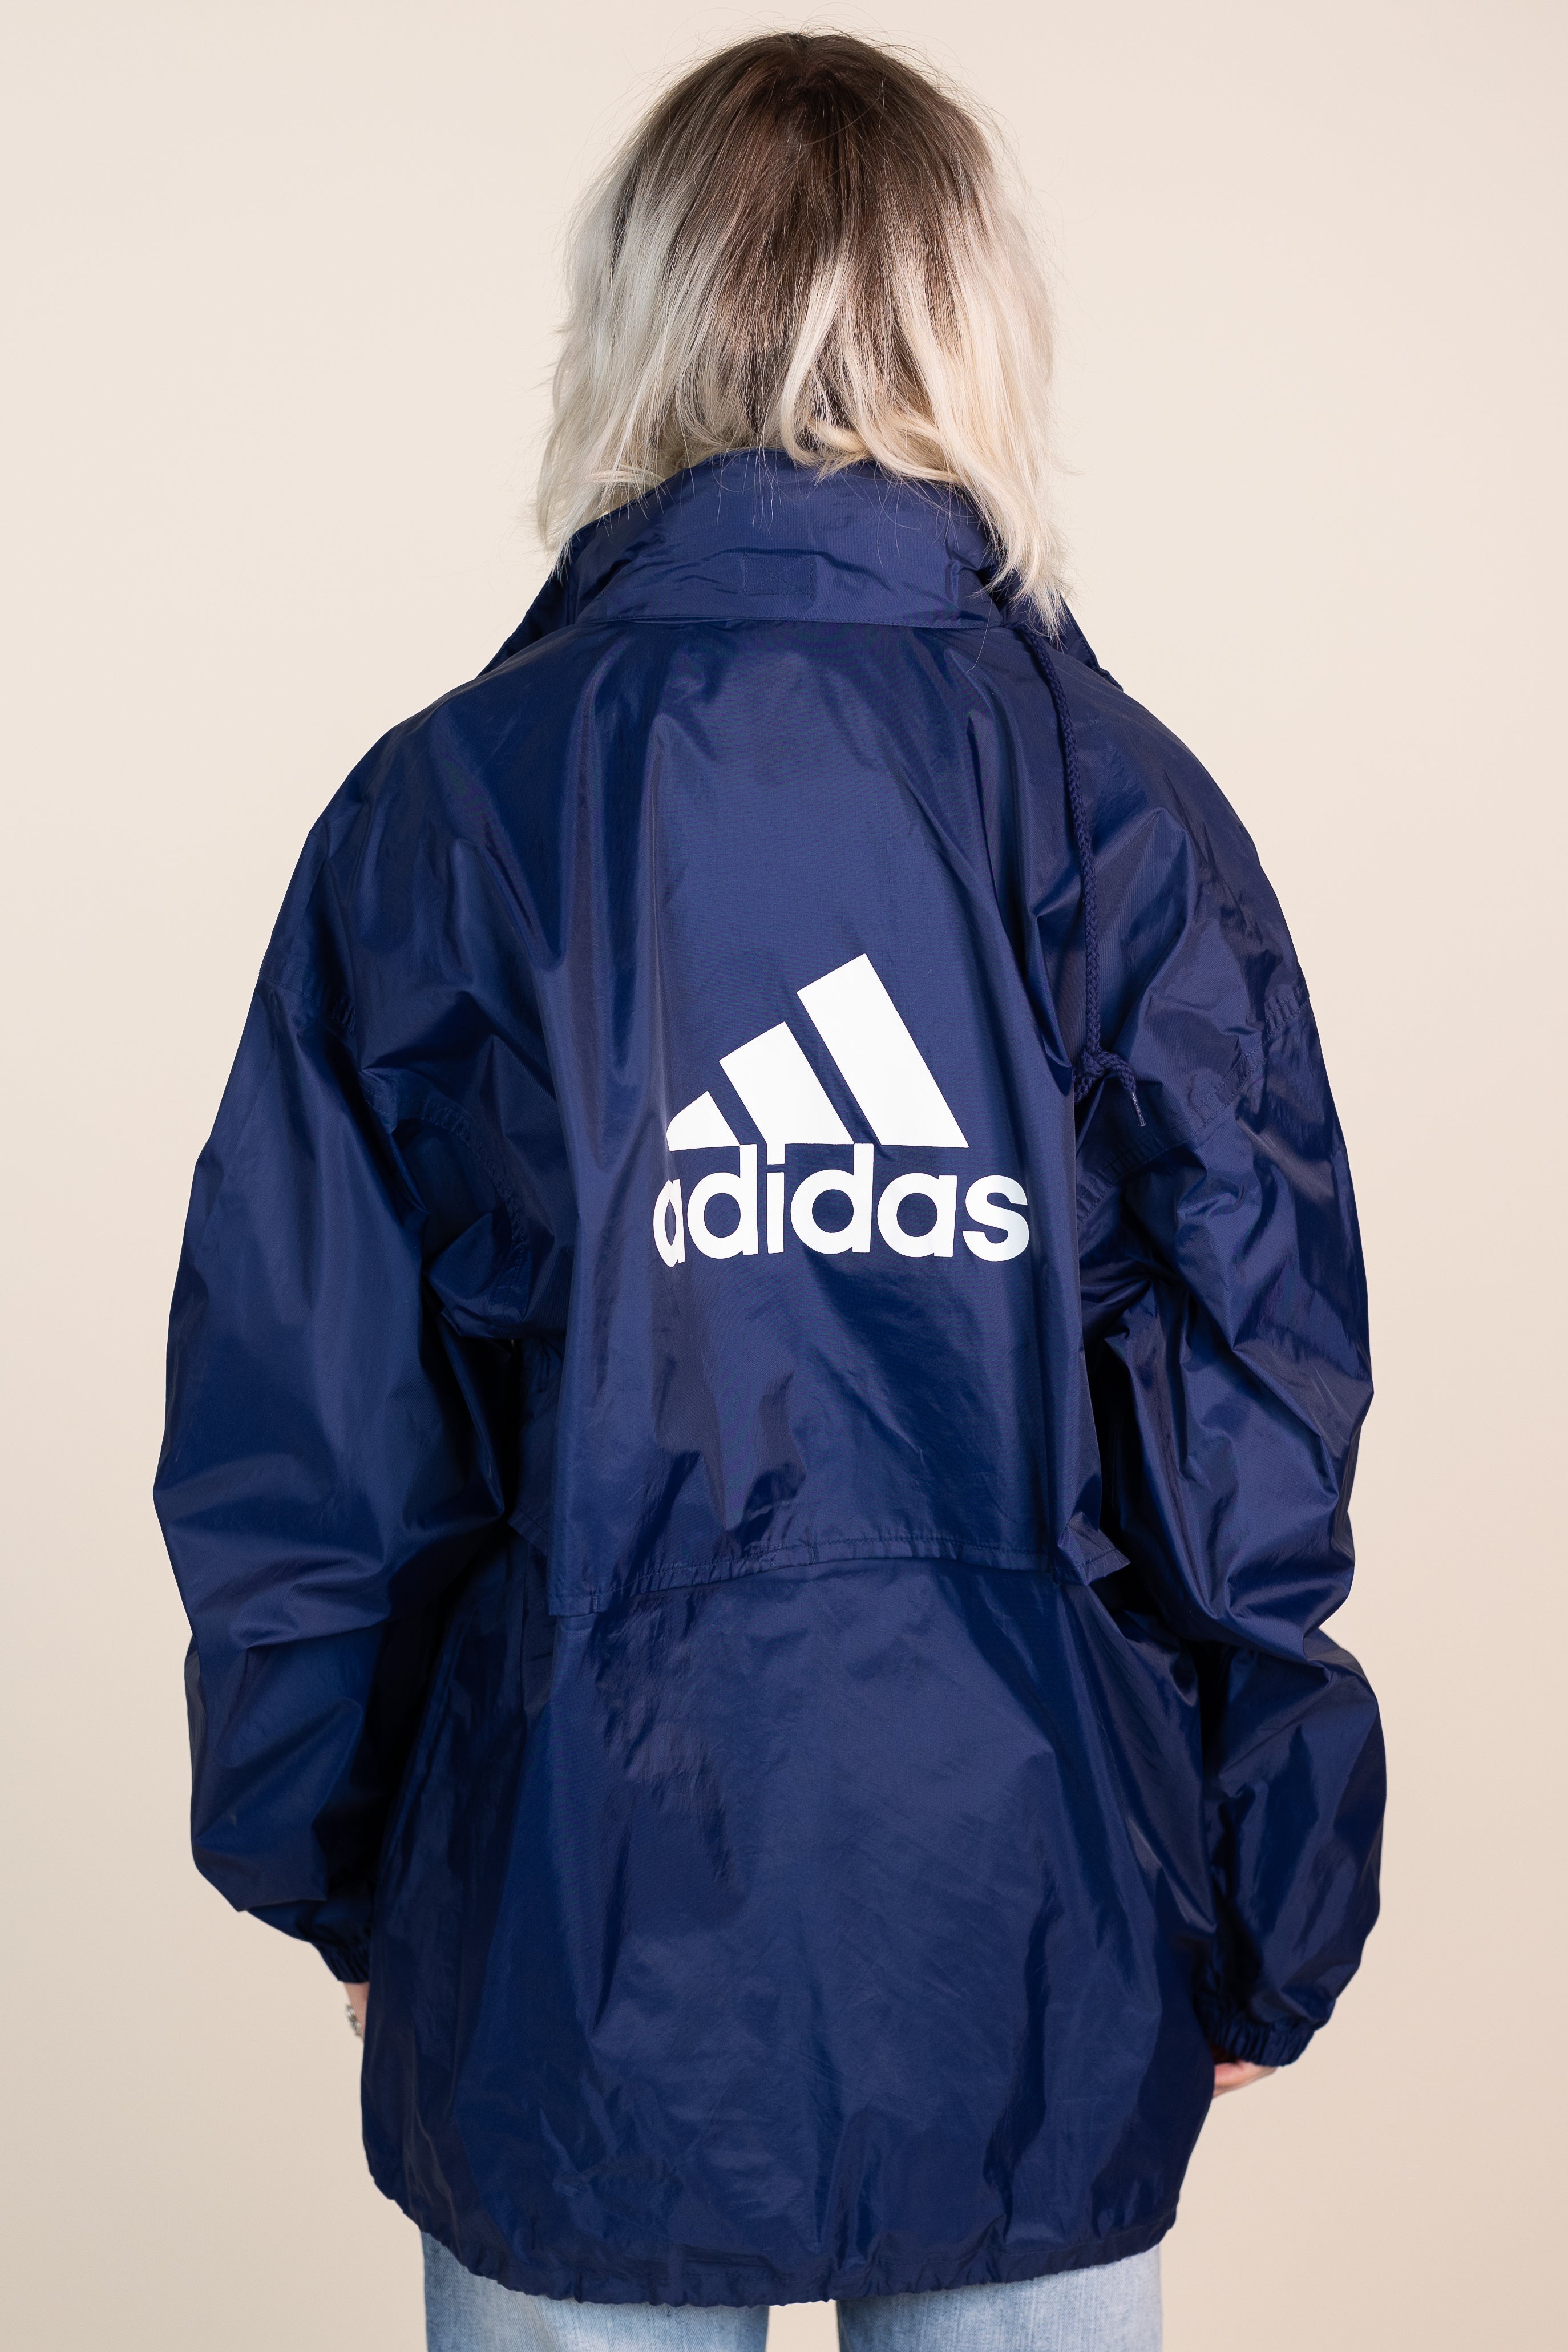 Adidas rain coat